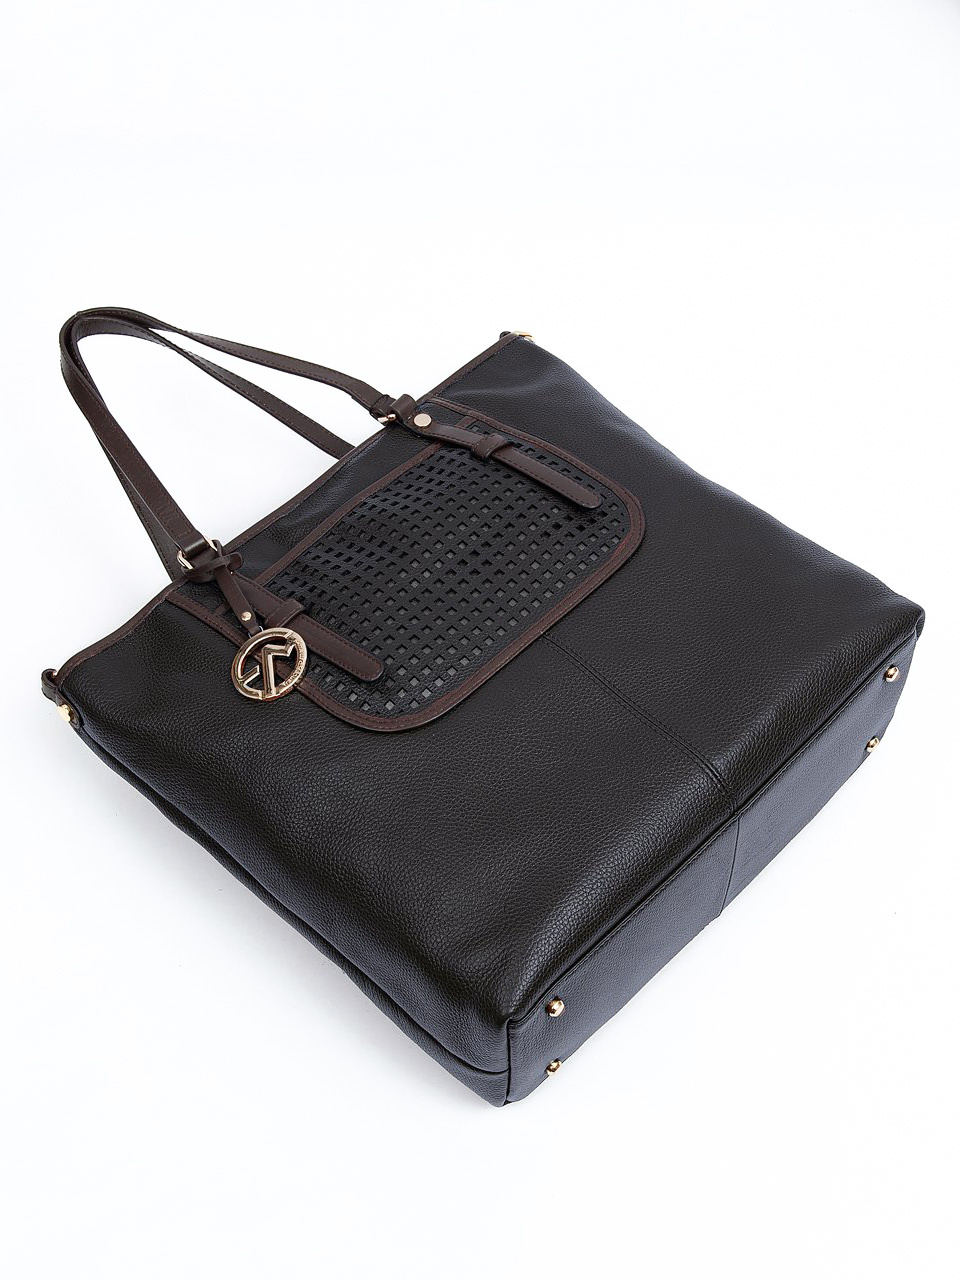 Фото Вертикальная сумка-тоут из плотной кожи черного цвета Классические сумки